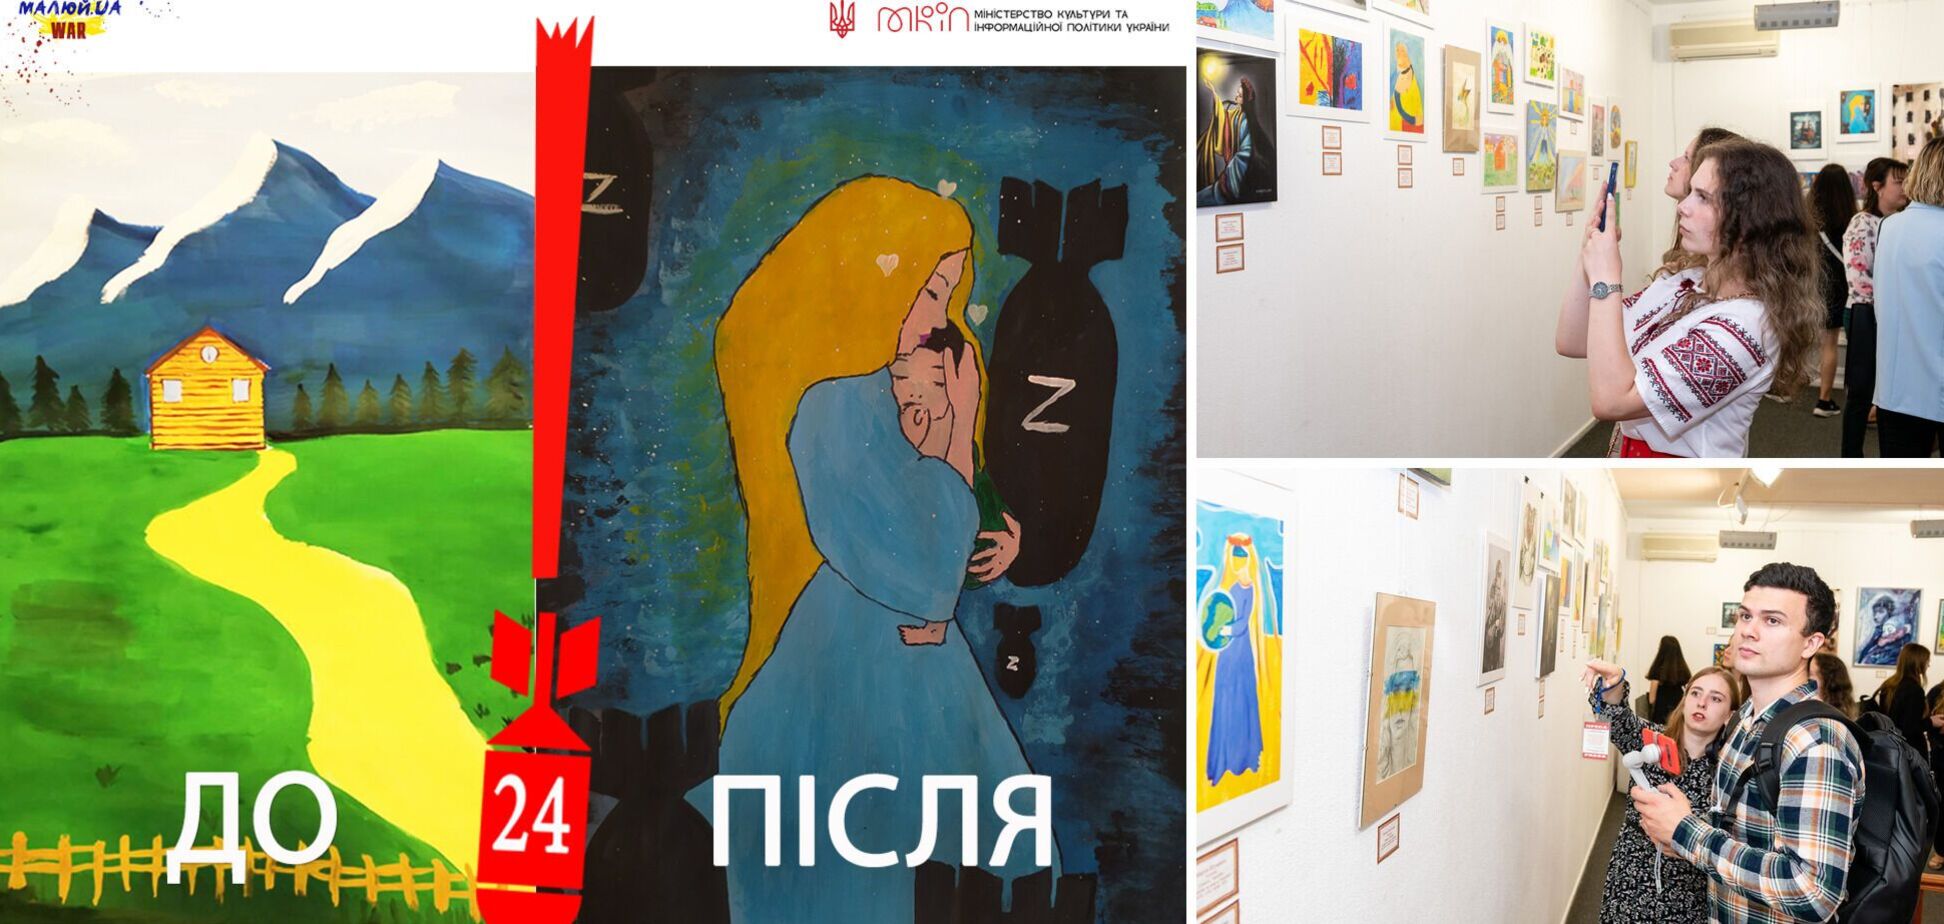 24. До и после: киевский музей представил трогательные картины юных художников